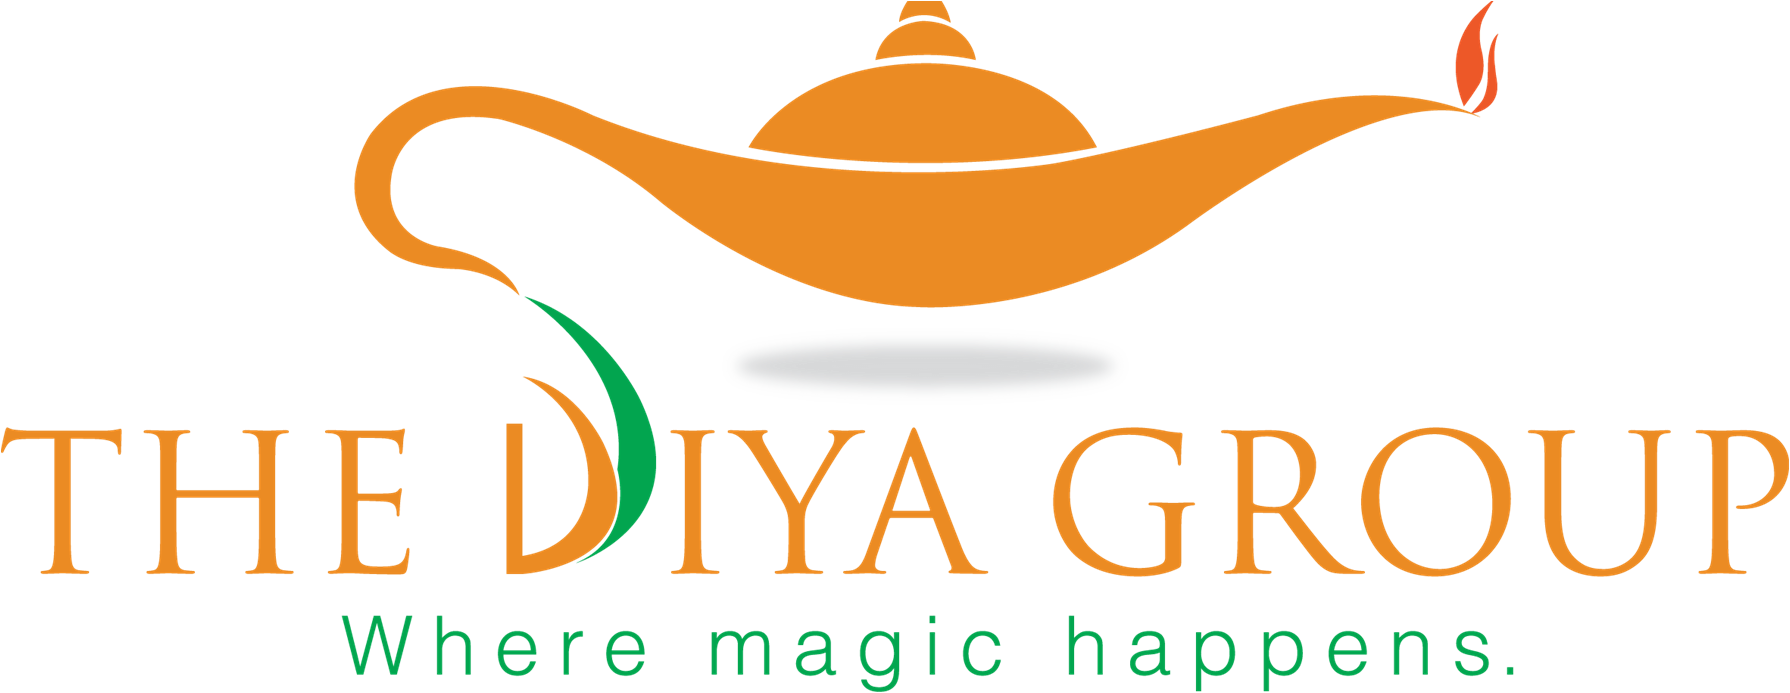 The Diya Group